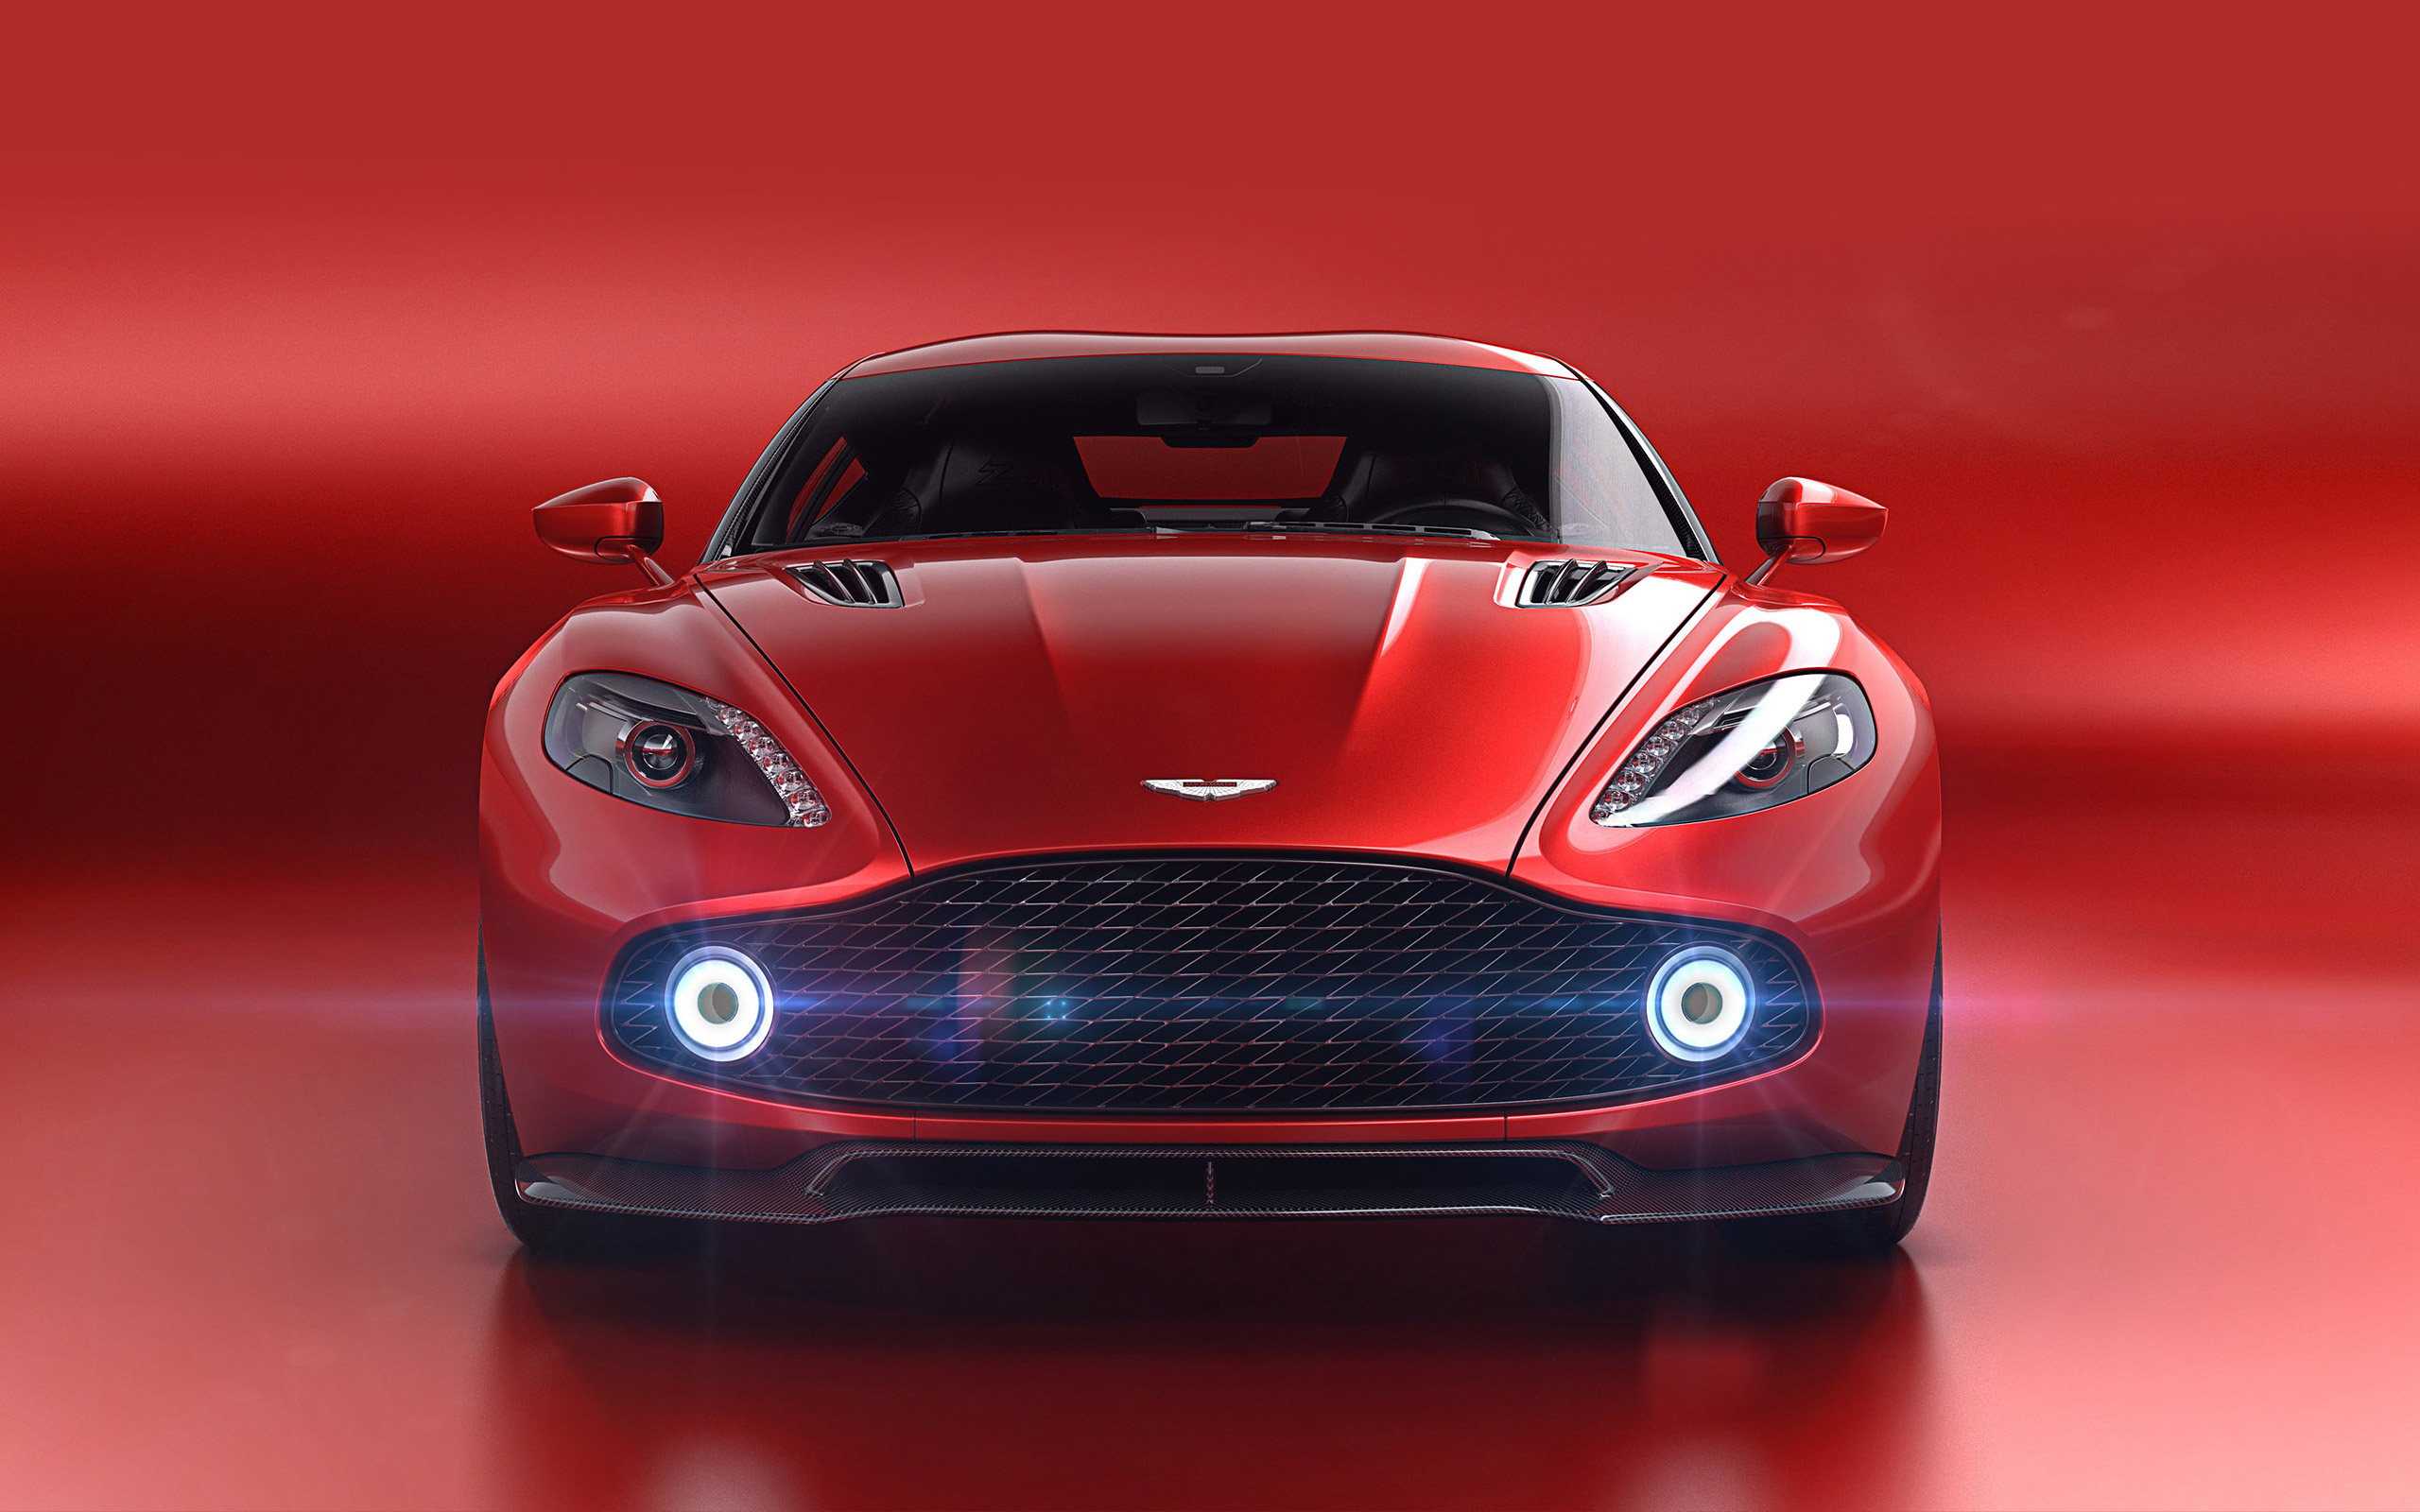 Descargar fondos de escritorio de Concepto De Aston Martin Vanquish Zagato HD